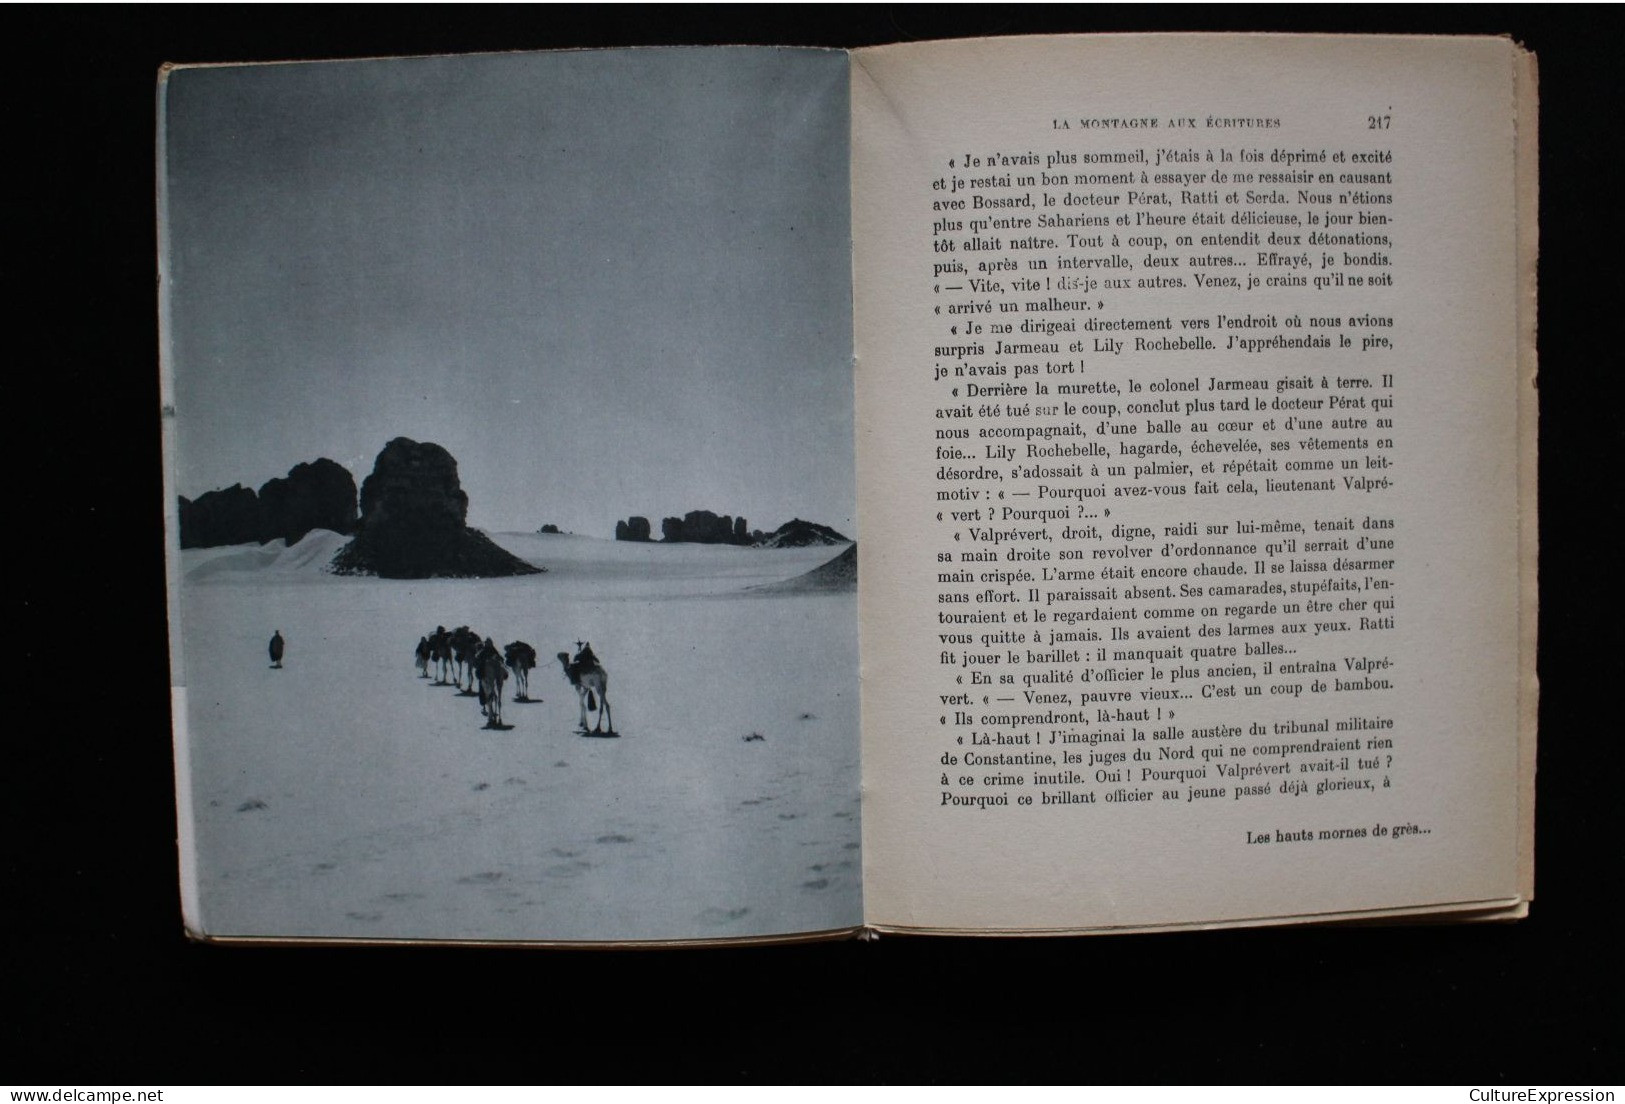 La Montagne aux écritures (Arthaud, 1952) de Roger Frison-Roche